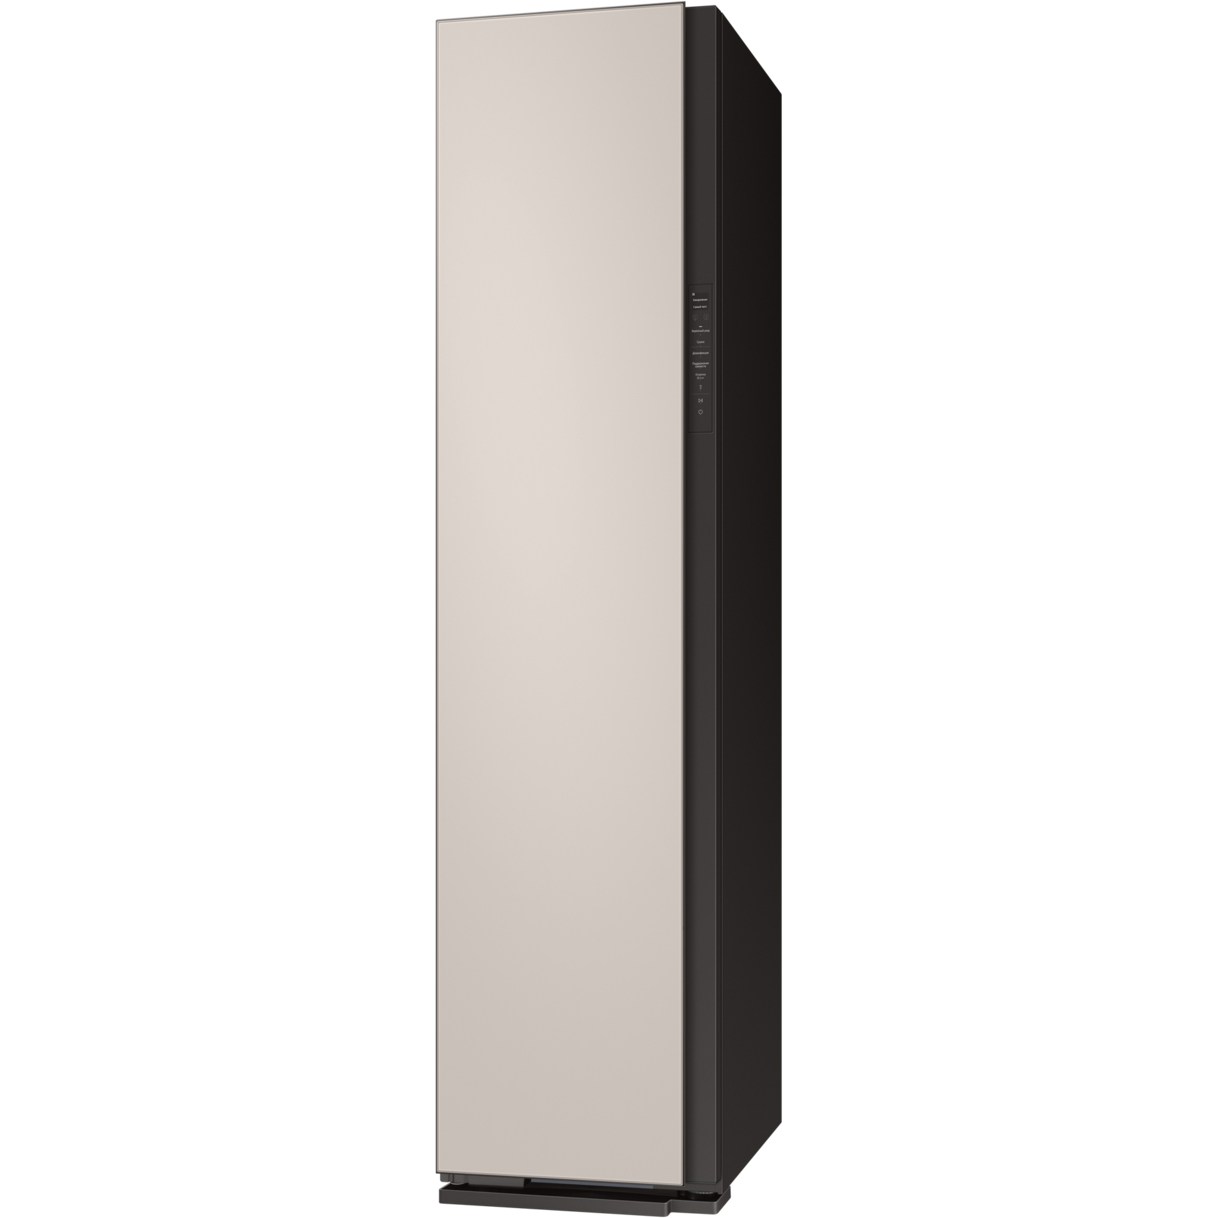 Паровой шкаф Samsung DF60A8500EG матово-бежевый, цвет черный - фото 3